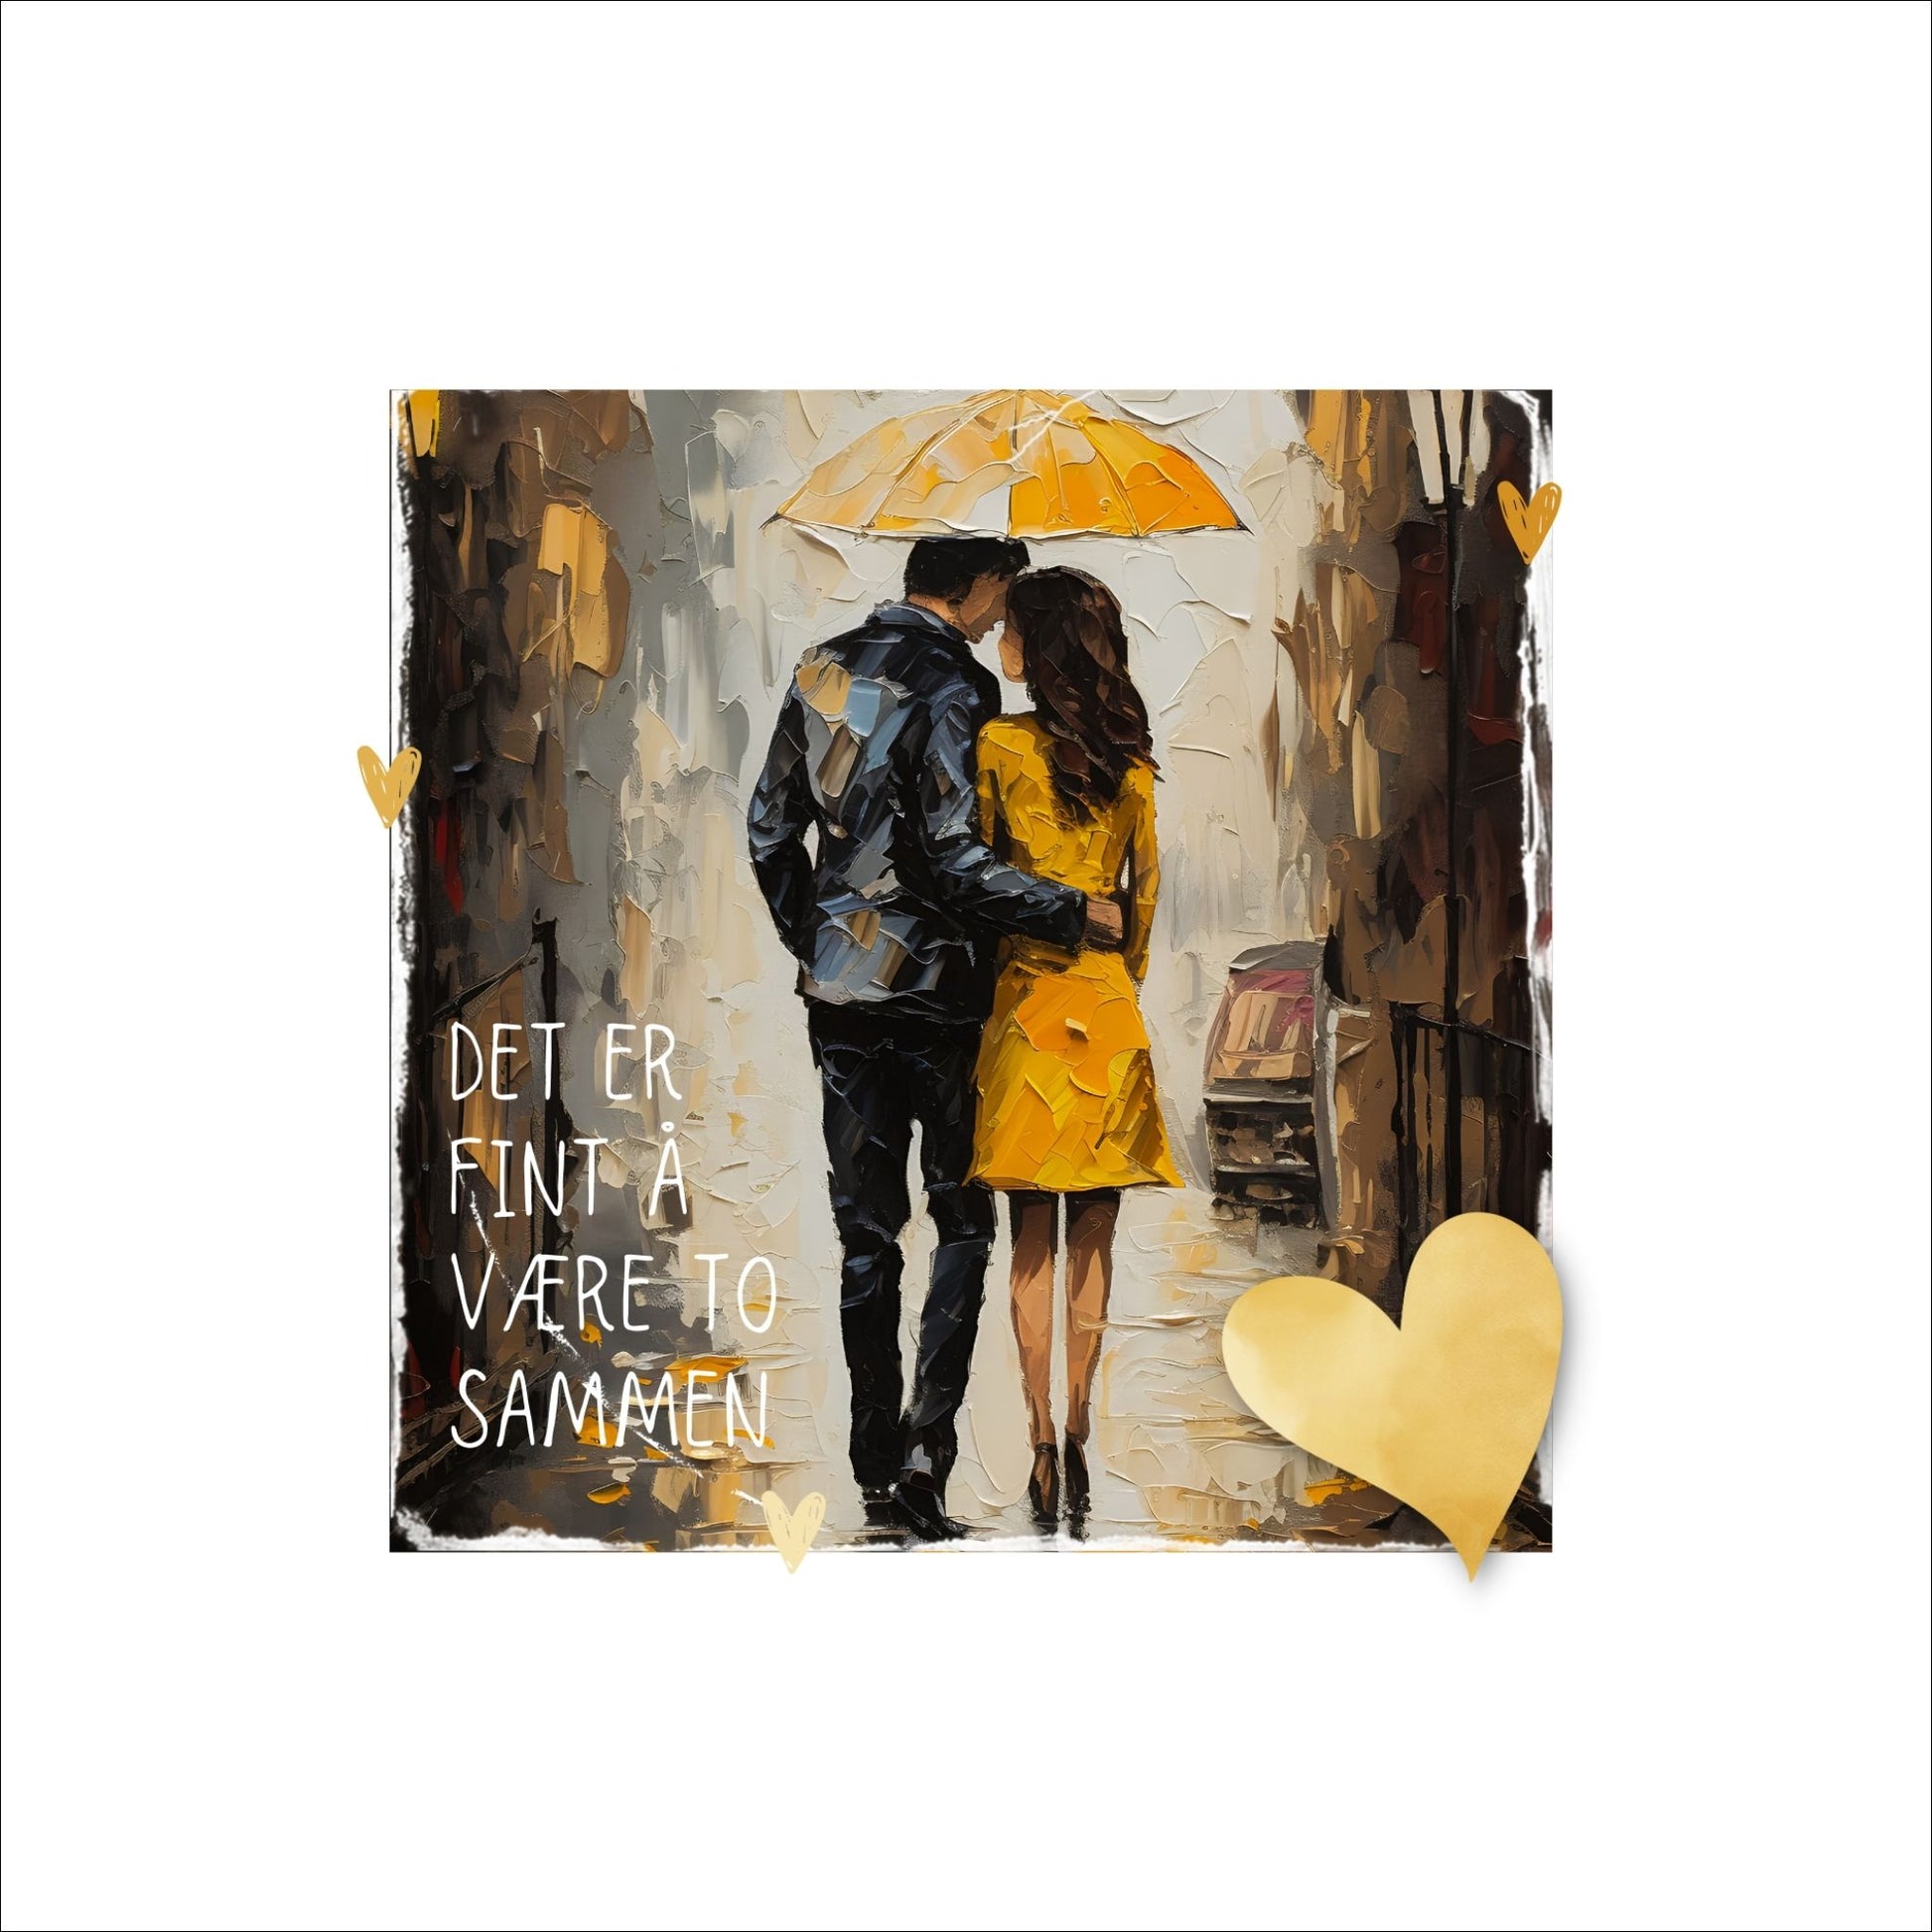 Plakat med lysegult hjerte og tekst "Det er fint å være to sammen" - og et motiv med et kjærestepar som går under en gul paraply. Bildet har en hvit kant på 4 cm. 